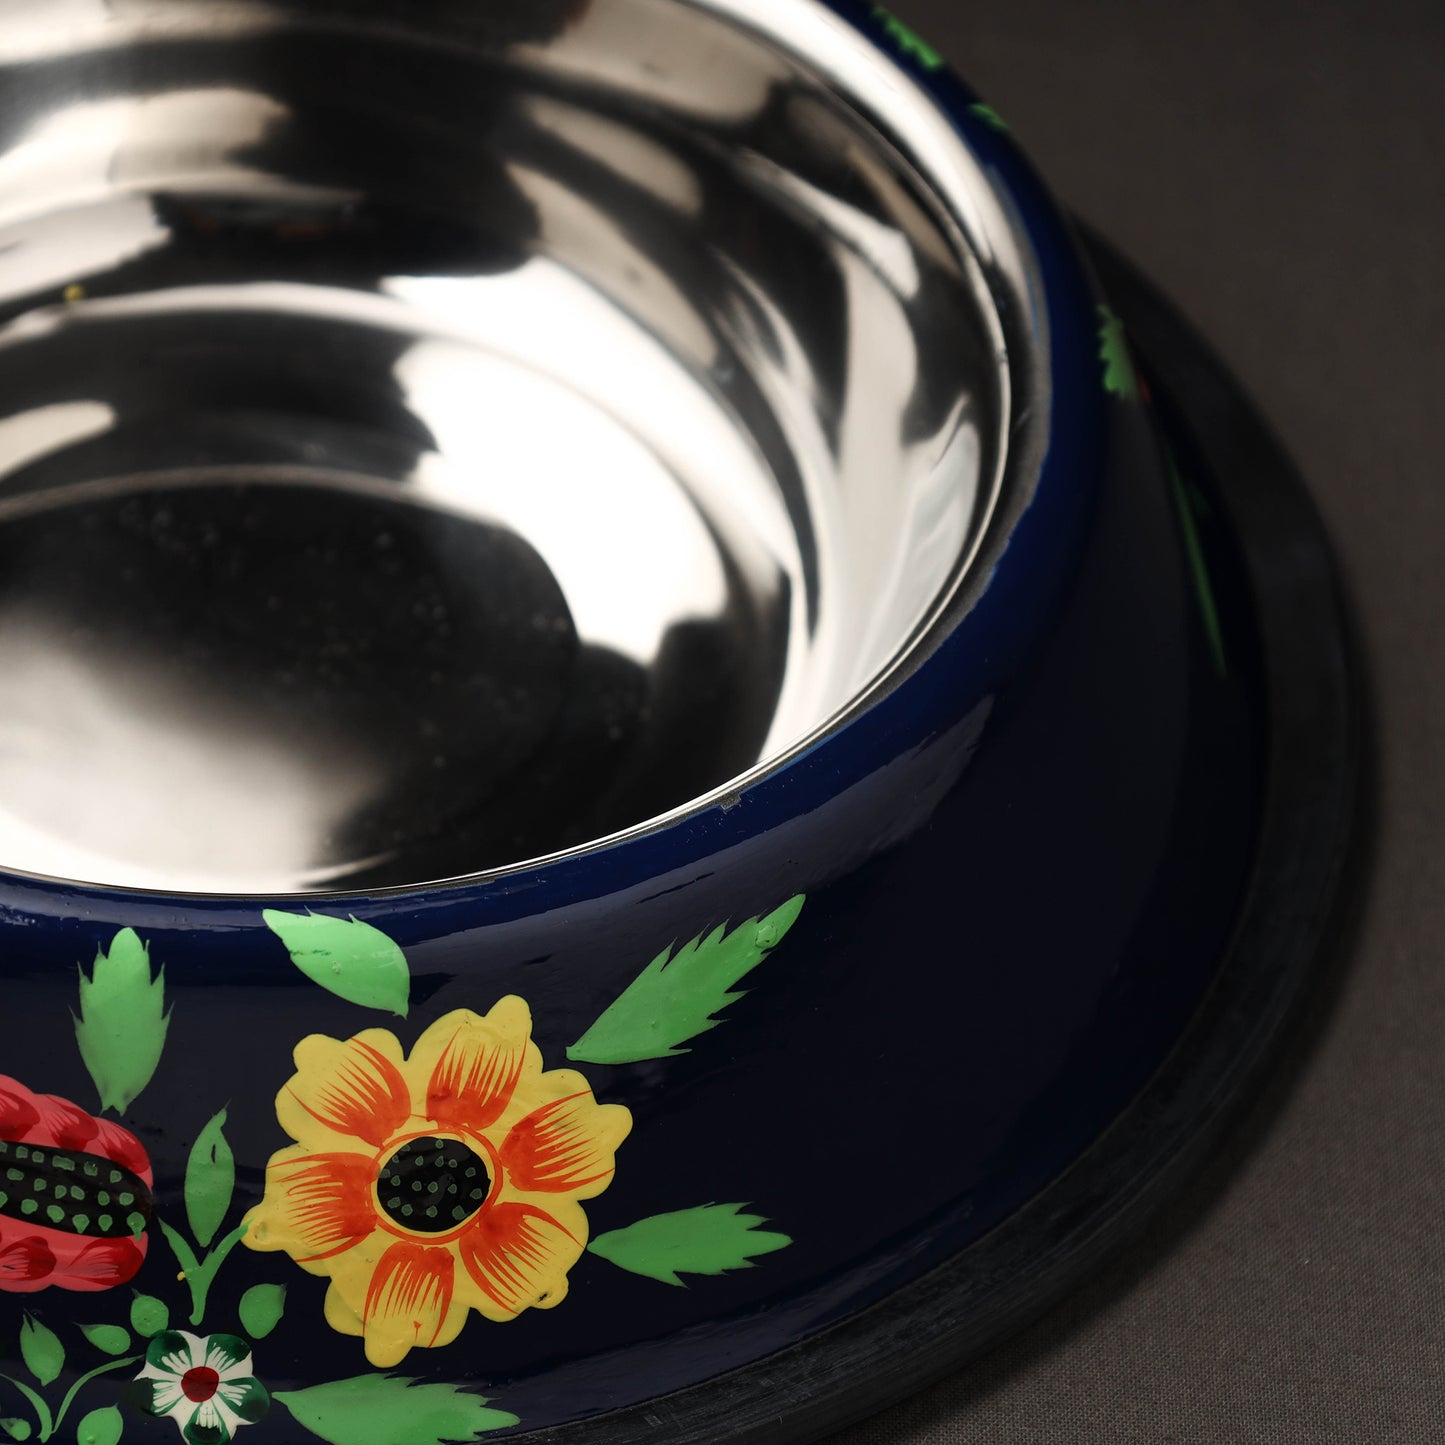 Floral Handpainted Enamelware Stainless Steel Pet Bowl